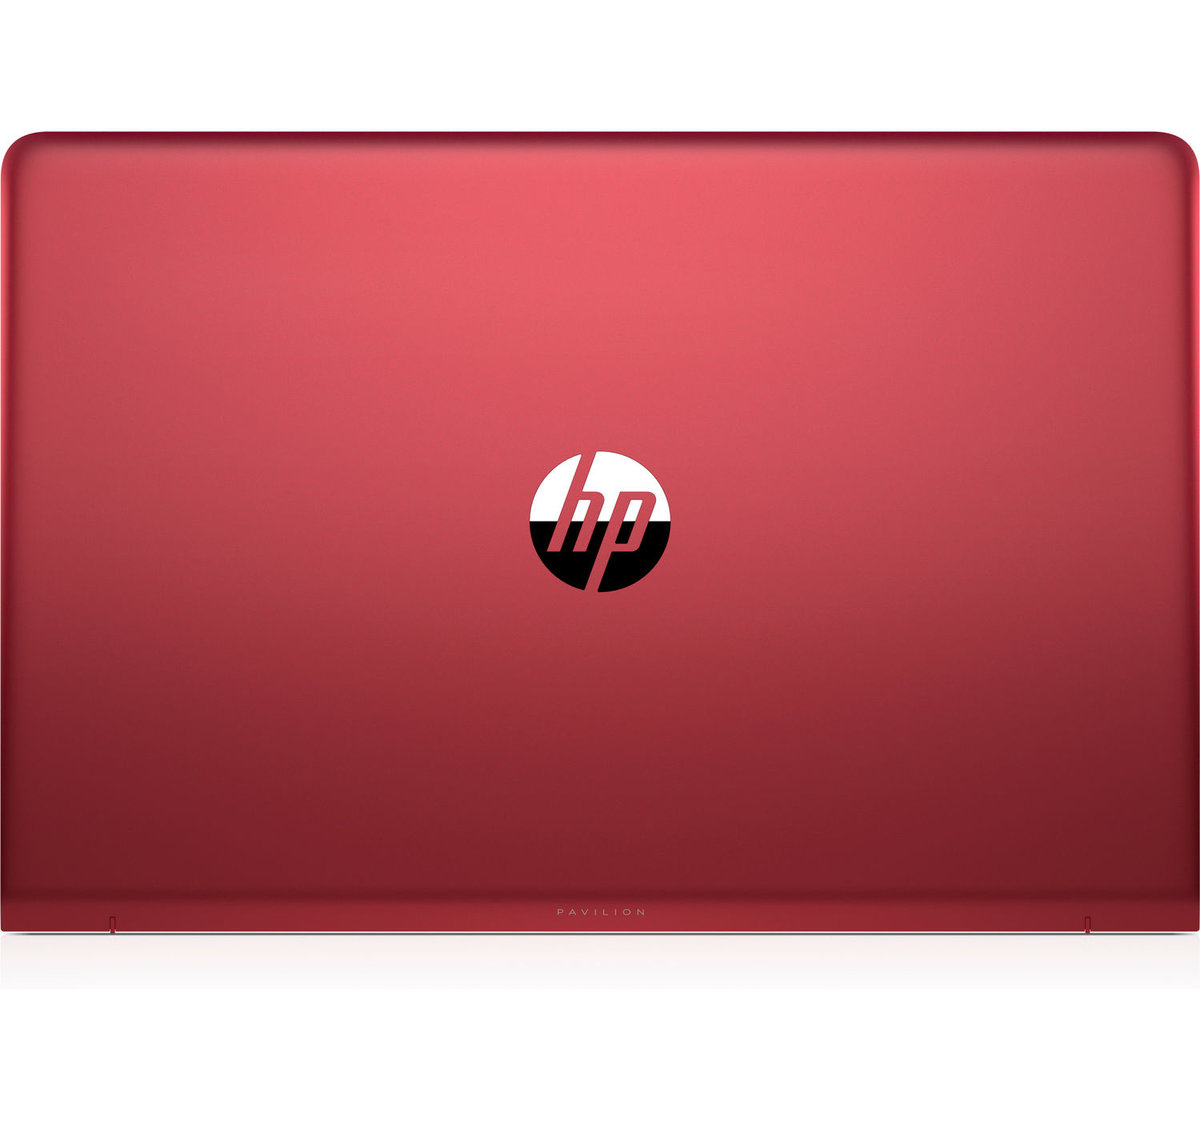 HP Pavilion Laptop 15-cc530ur